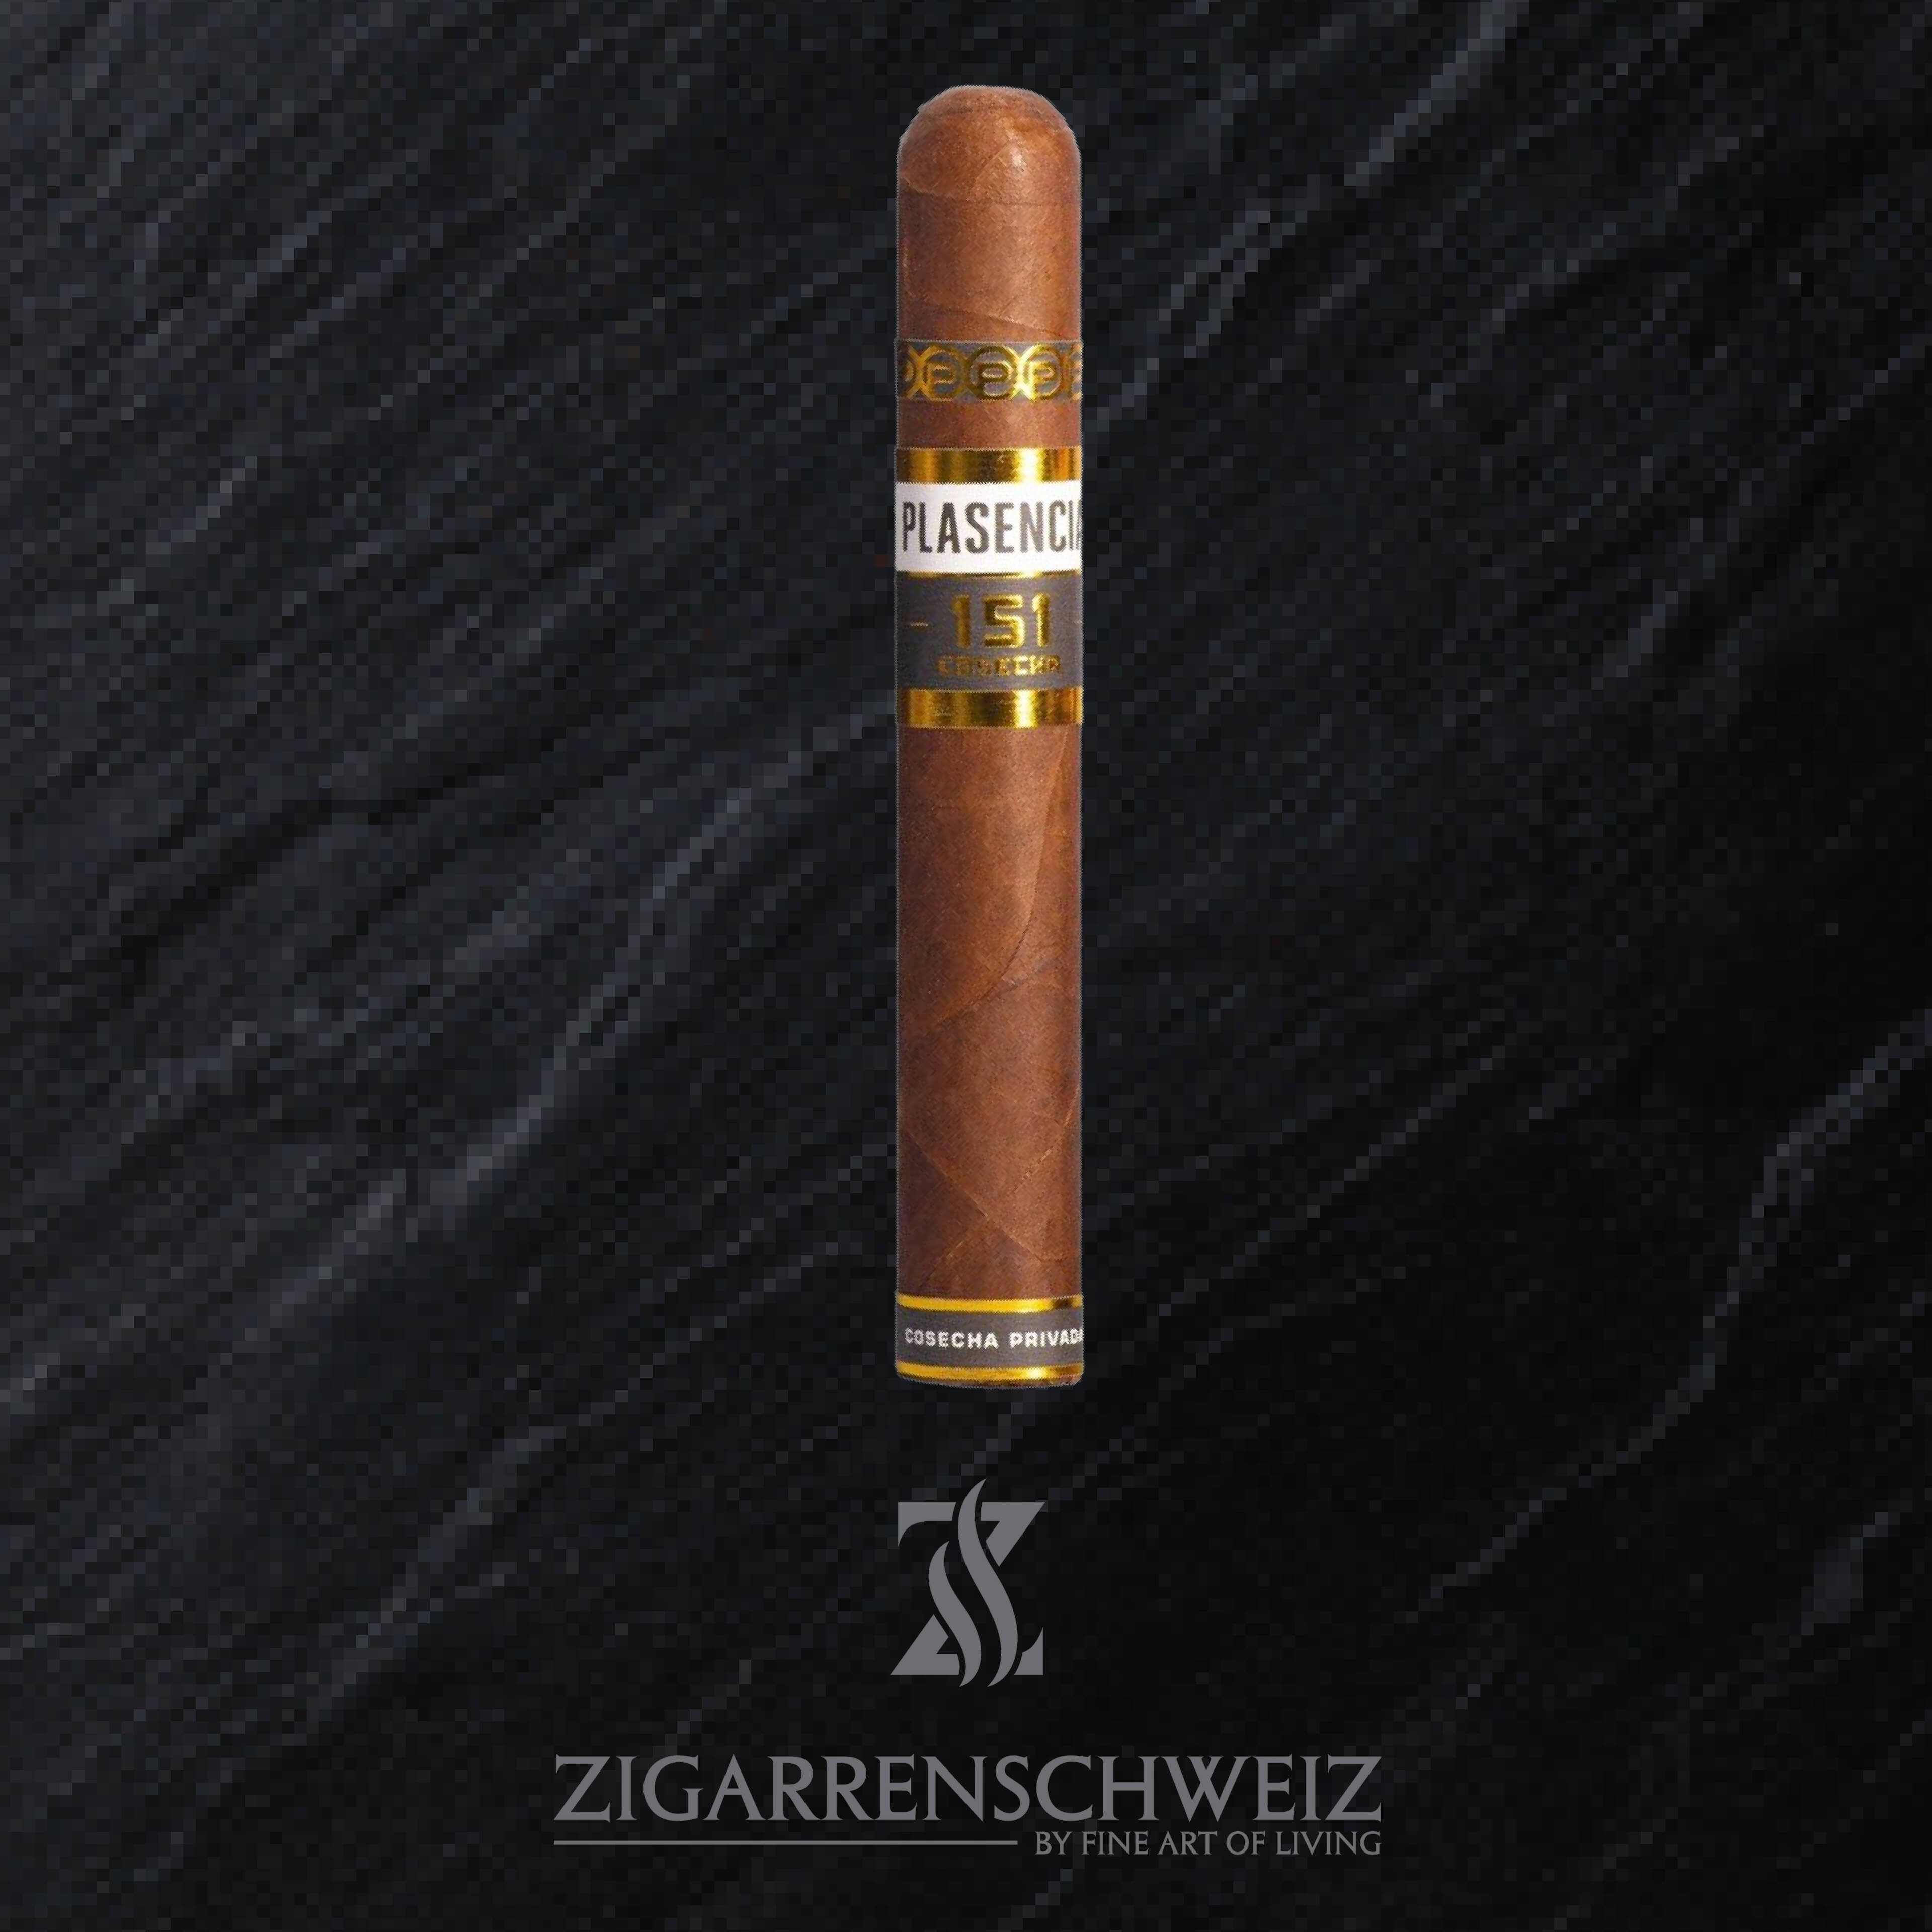 Plasencia Cosecha 151 Toro (La Tradicion) Zigarre